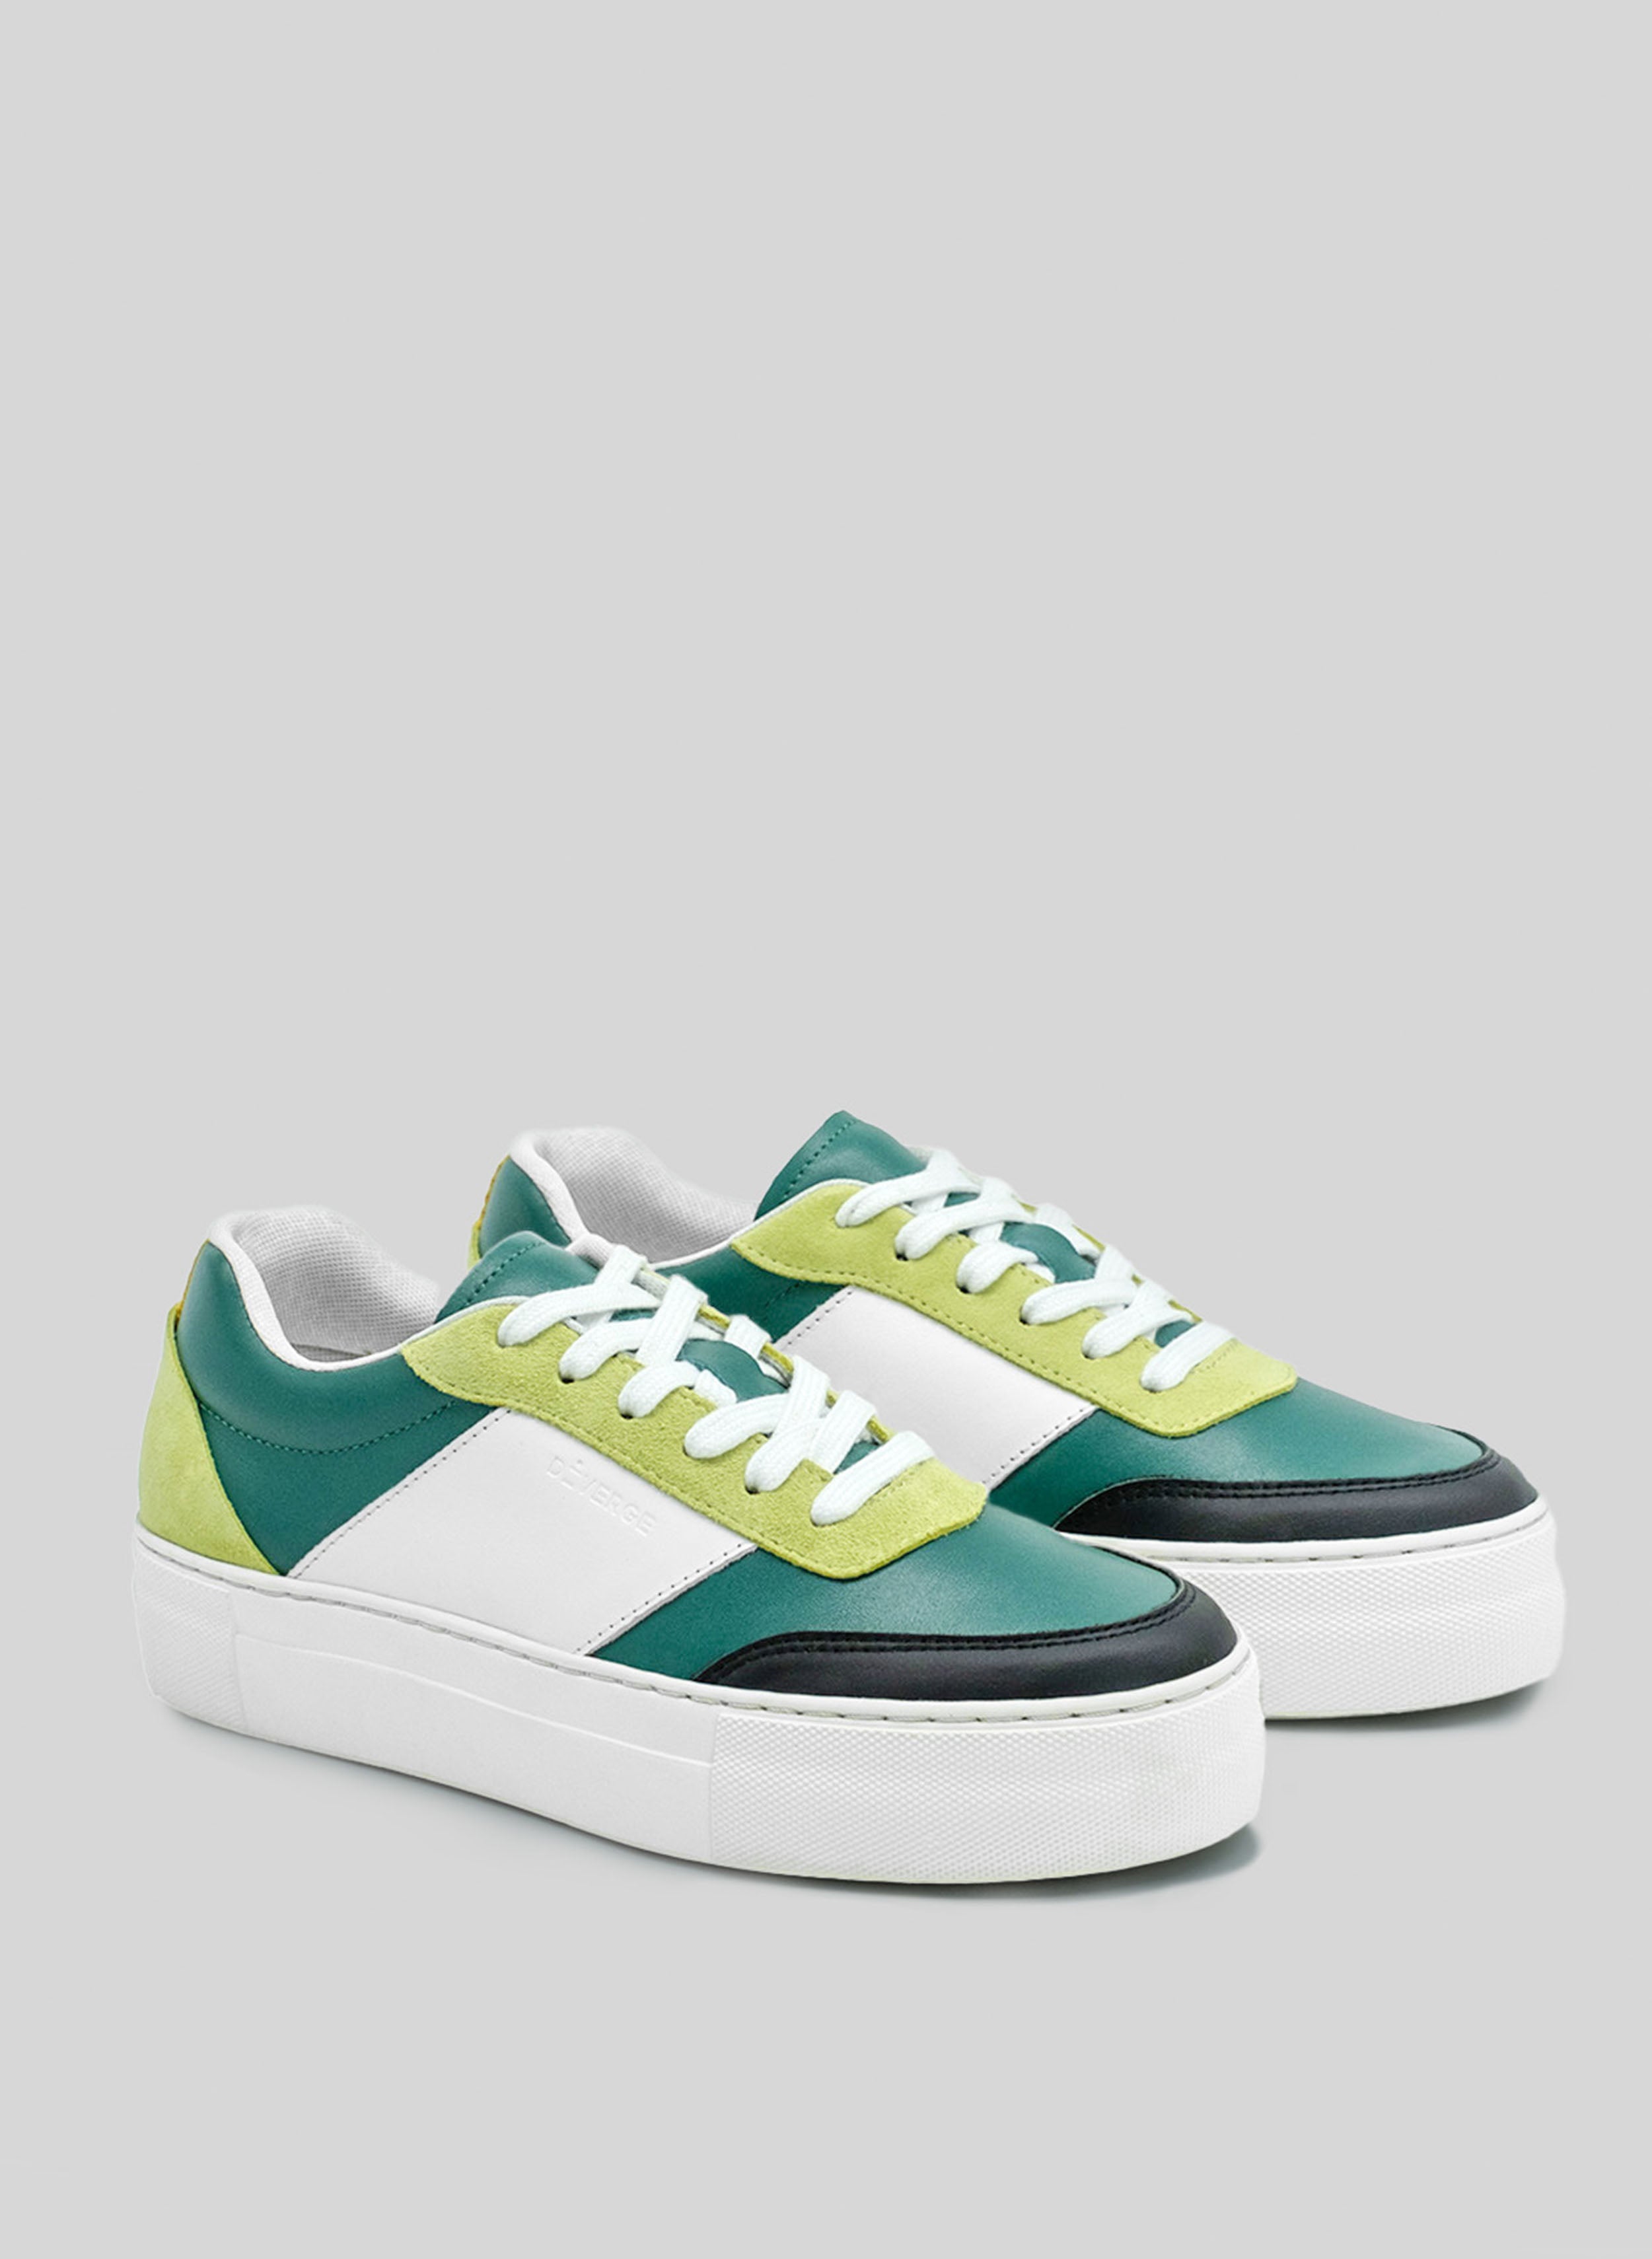 Une paire de chaussures personnalisées vertes, blanches, noires et citron vert sneakers avec une semelle blanche, fabriquées par Diverge, pour promouvoir un impact social.